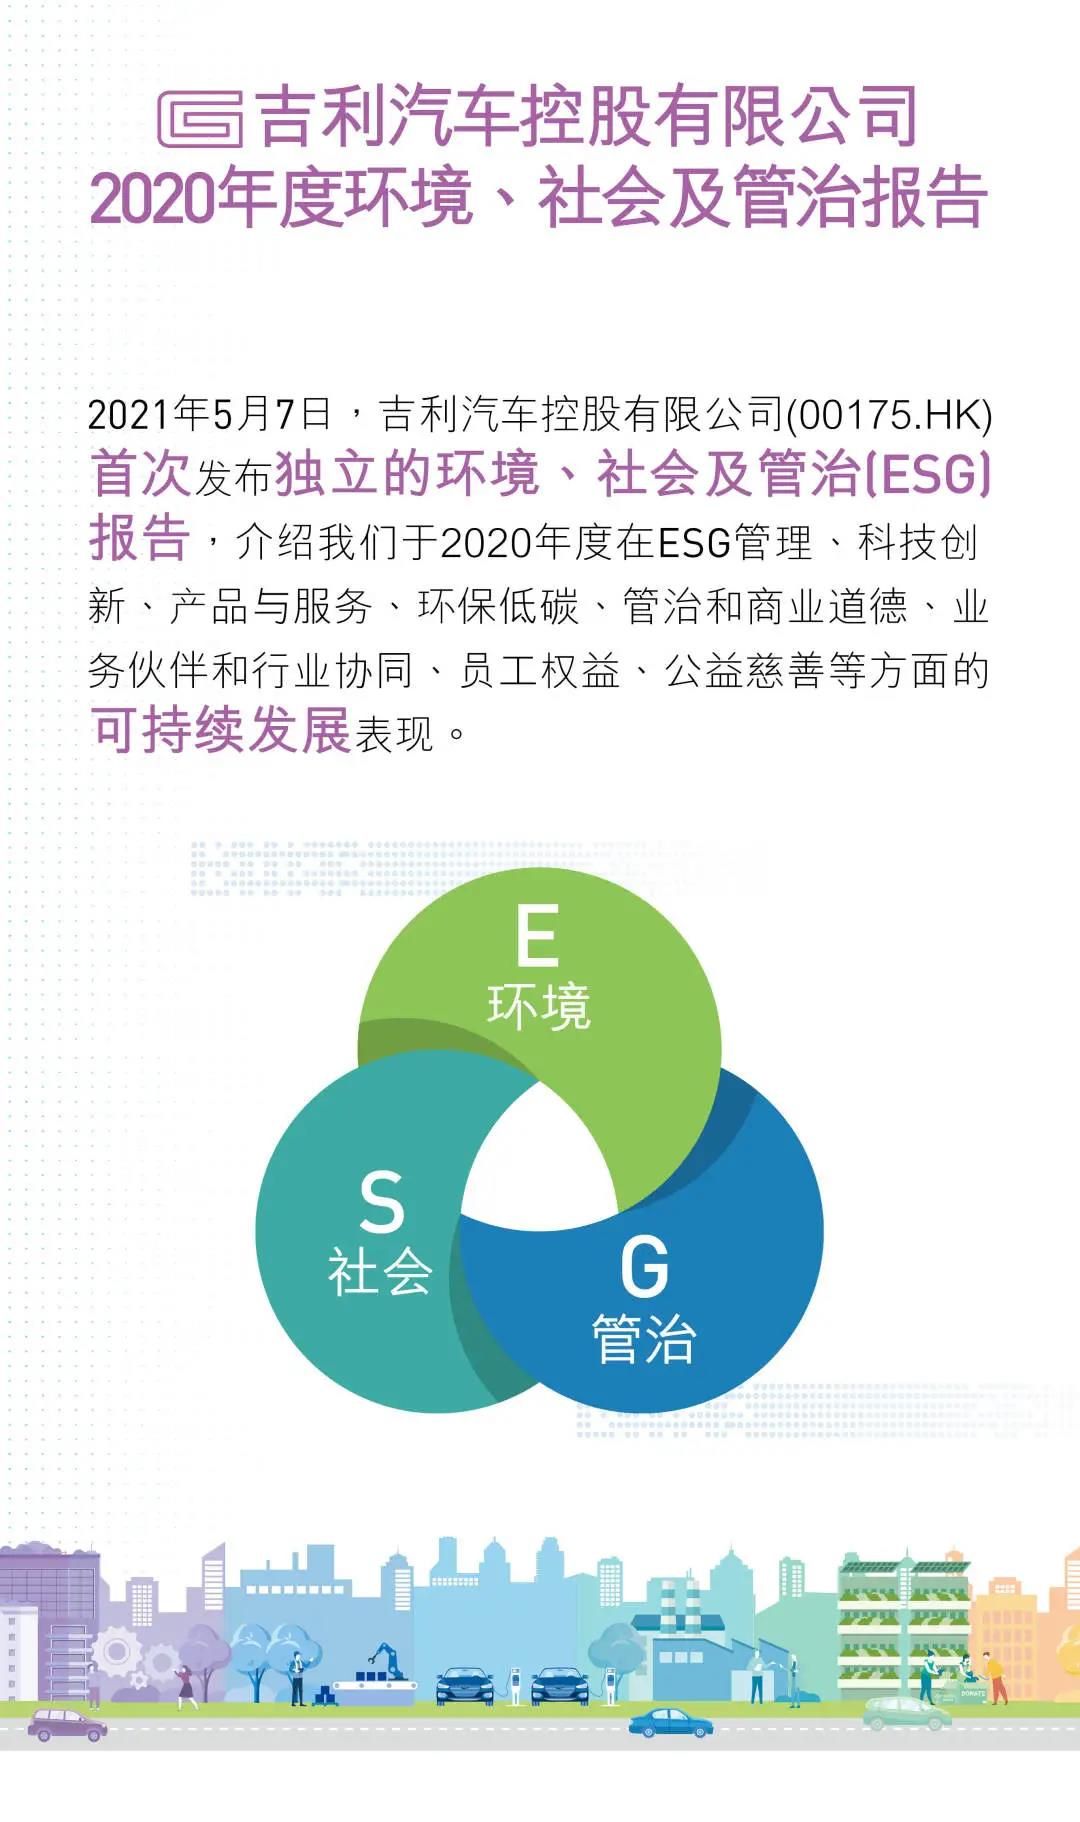 吉利汽车发布首份ESG报告 七大维度全面阐释环保、责任与担当